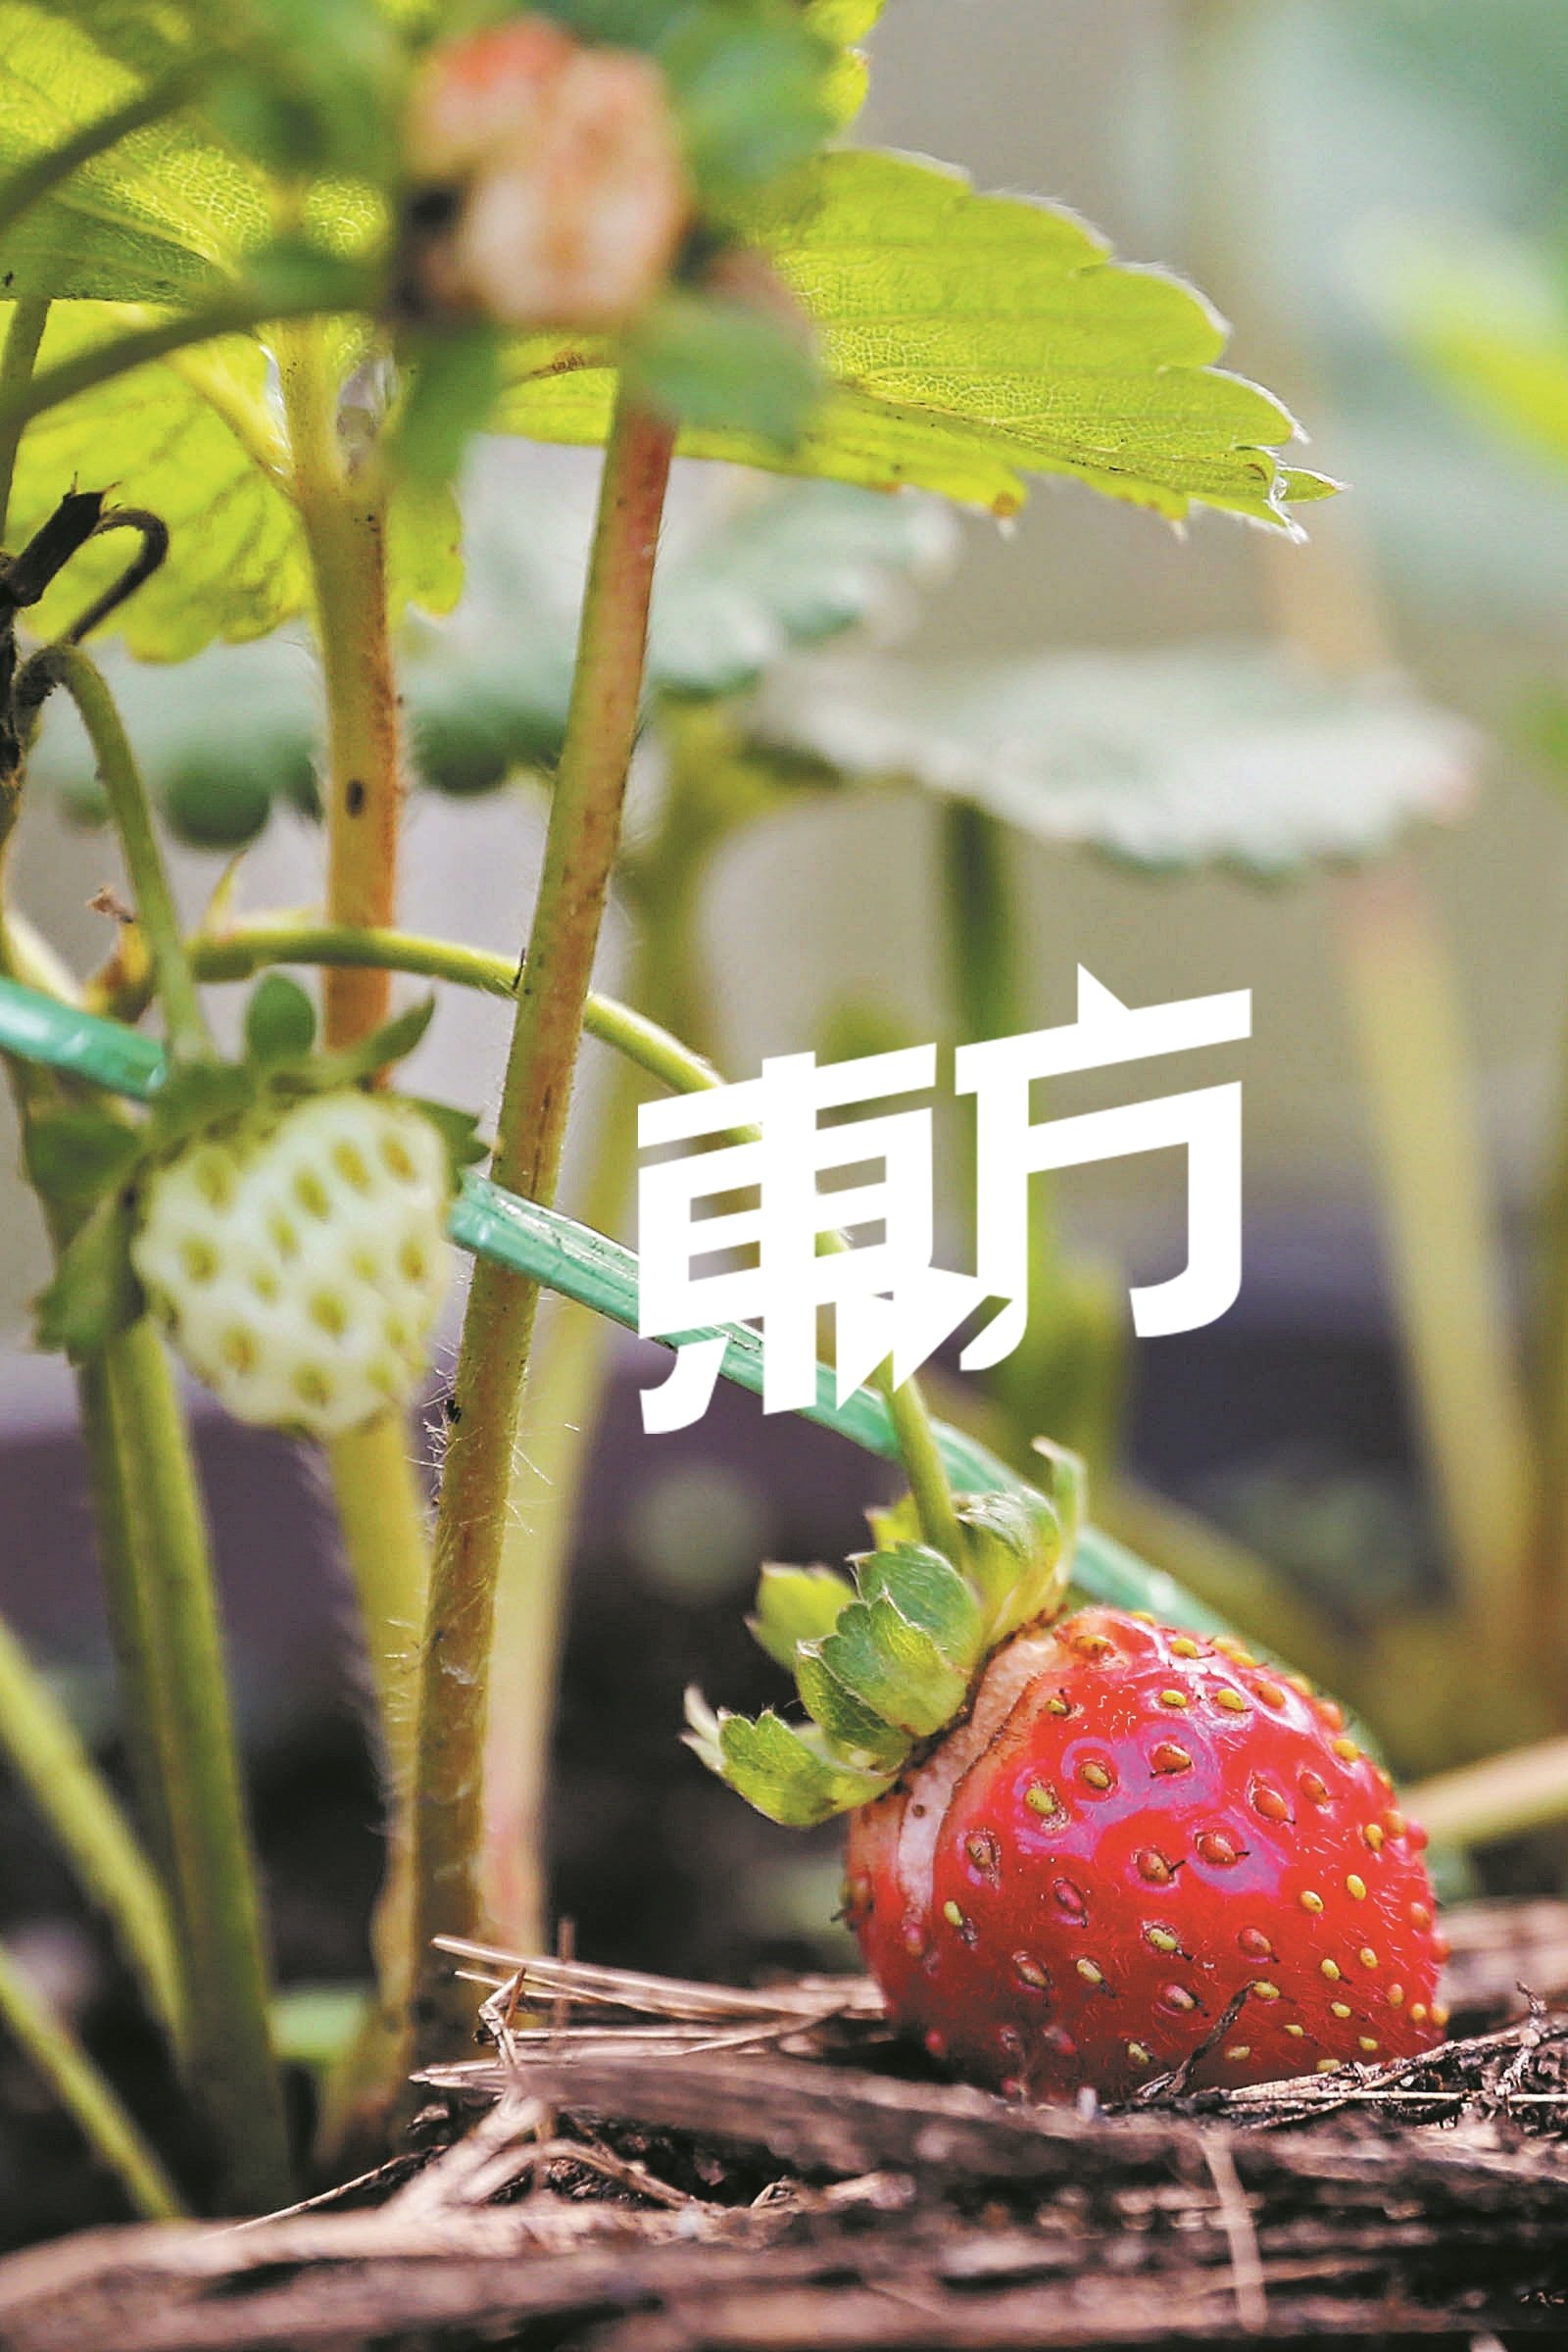 一株草莓苗可结出多颗草莓果实。 （摄影：刘维杰）